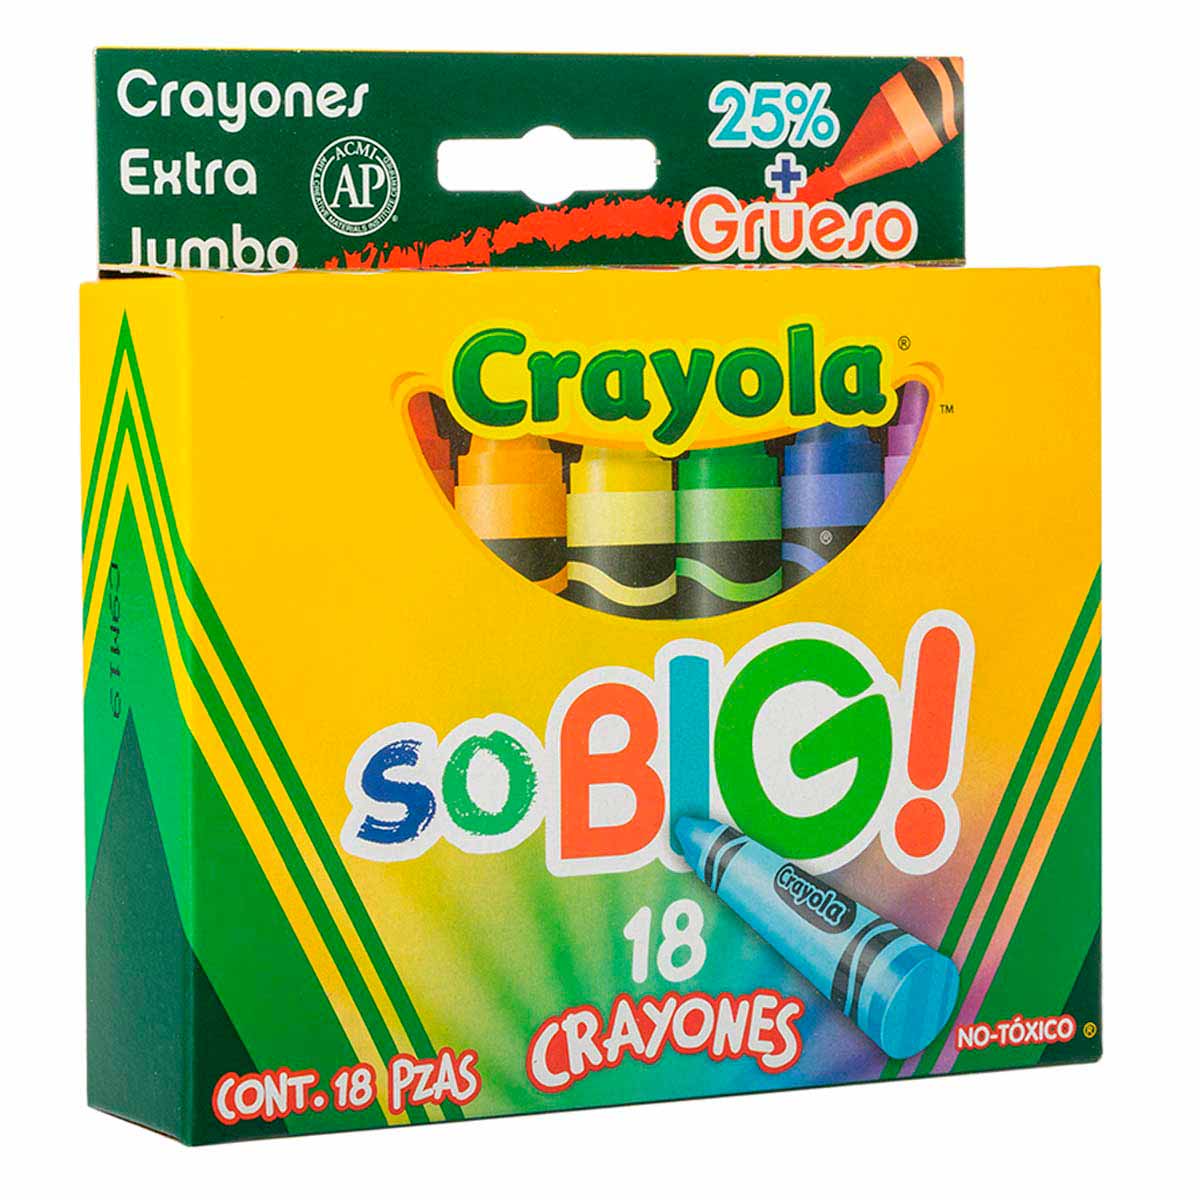 18 Crayones Extra Jumbo So Big Escolar Colorear Crayola - MarchanteMX